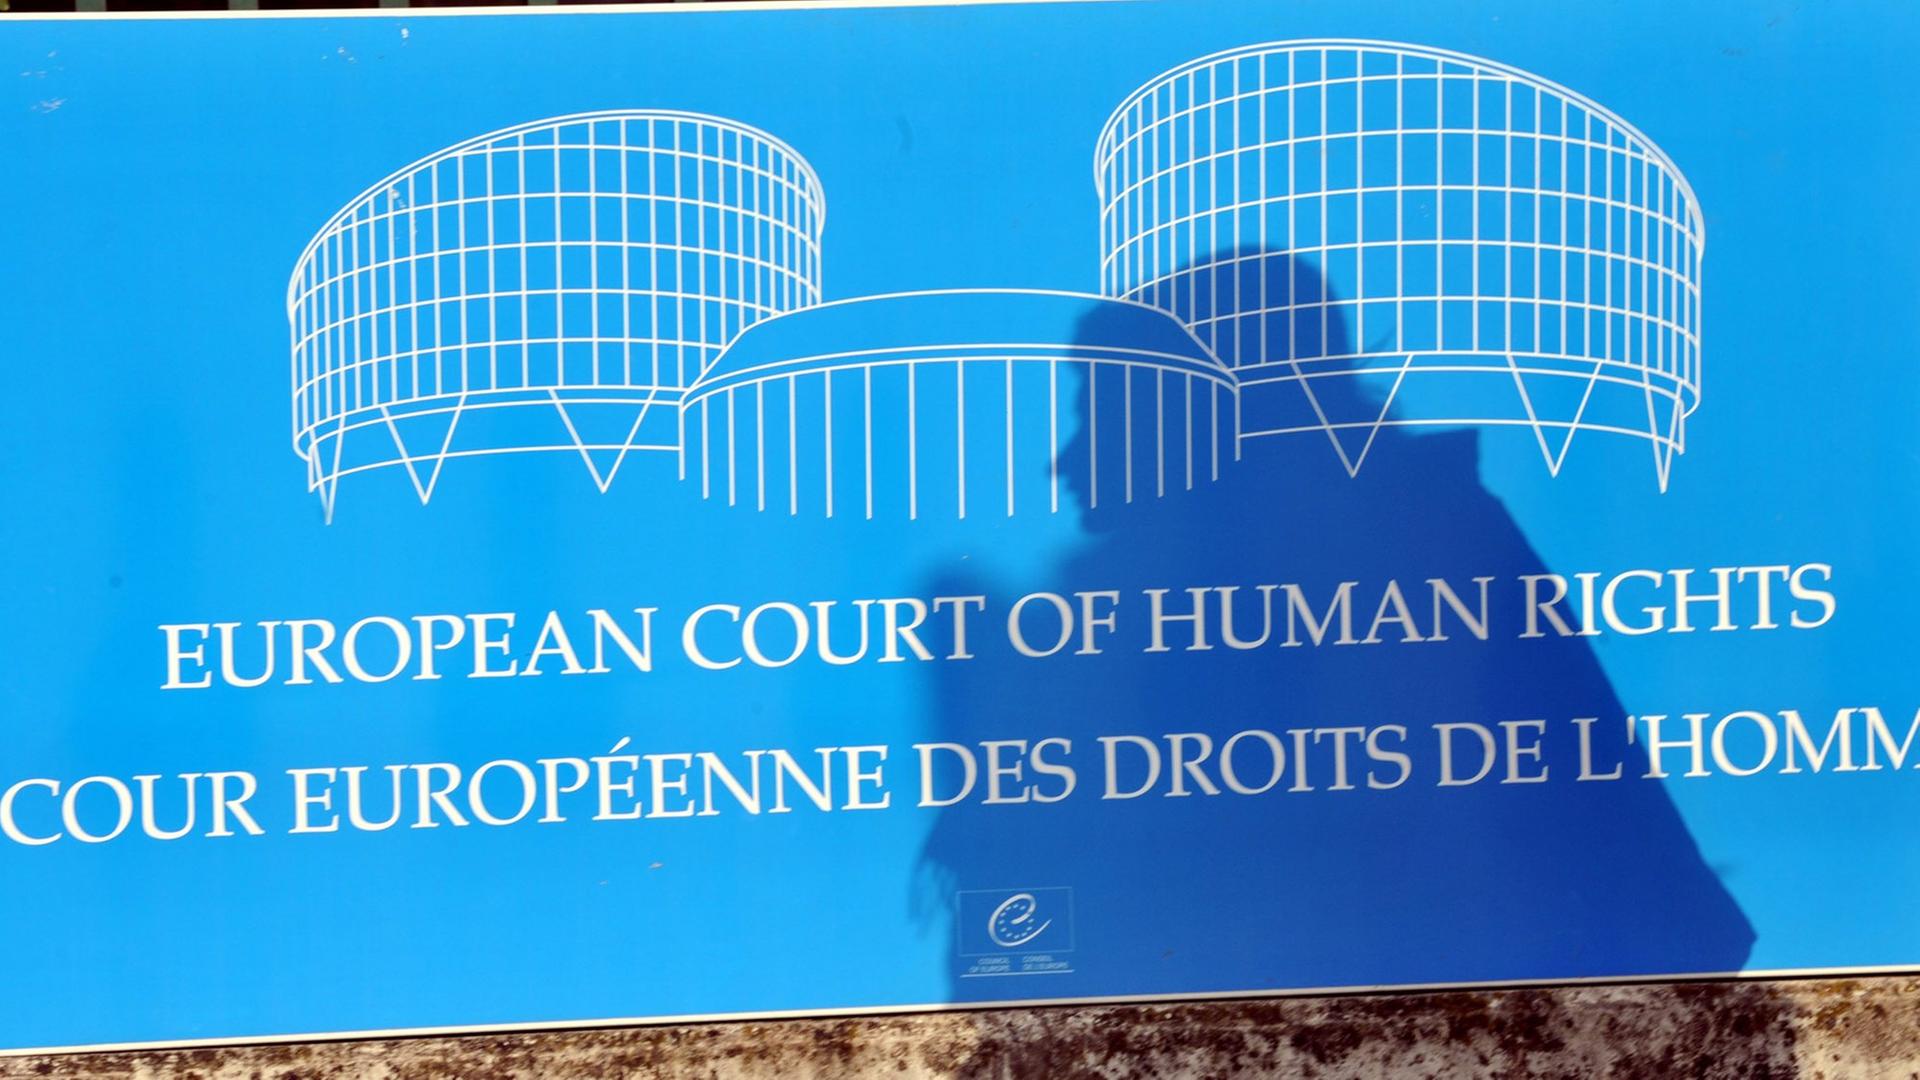 Der Schatten einer Frau fällt auf ein Schild vor dem Gebäude des Europäischen Gerichtshofs für Menschenrechte (EGMR) in Straßburg.